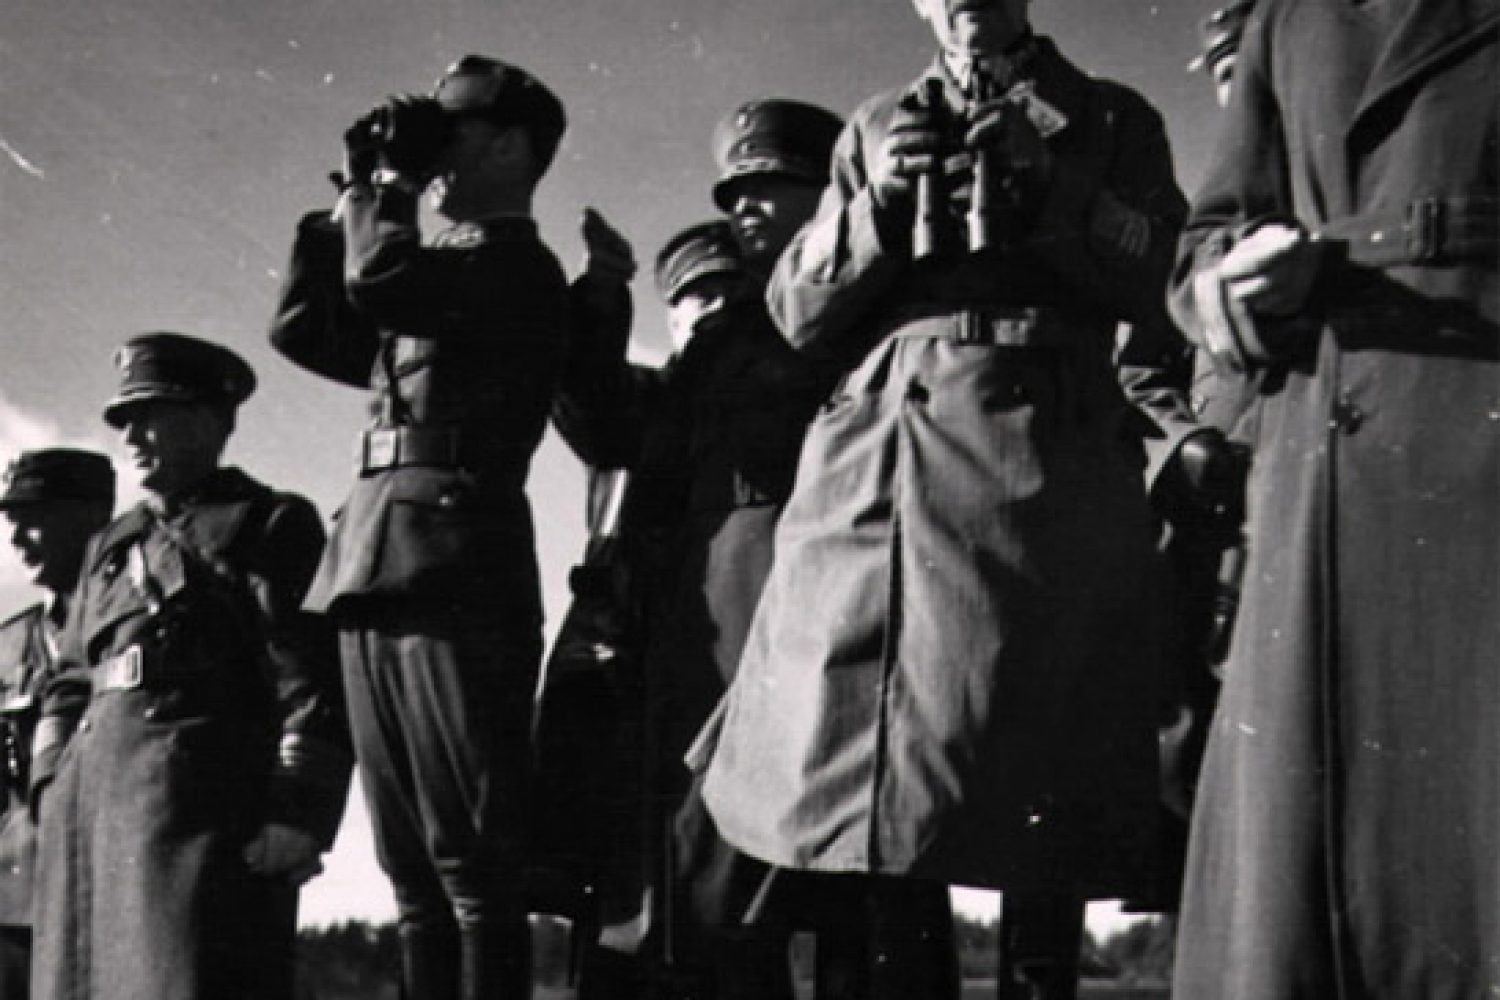 Mustavalkoisessa kuvassa kahdeksan sotapukuista miestä seisoo ulkona. Kaksi heistä pitelevät kiikareita käsissään.